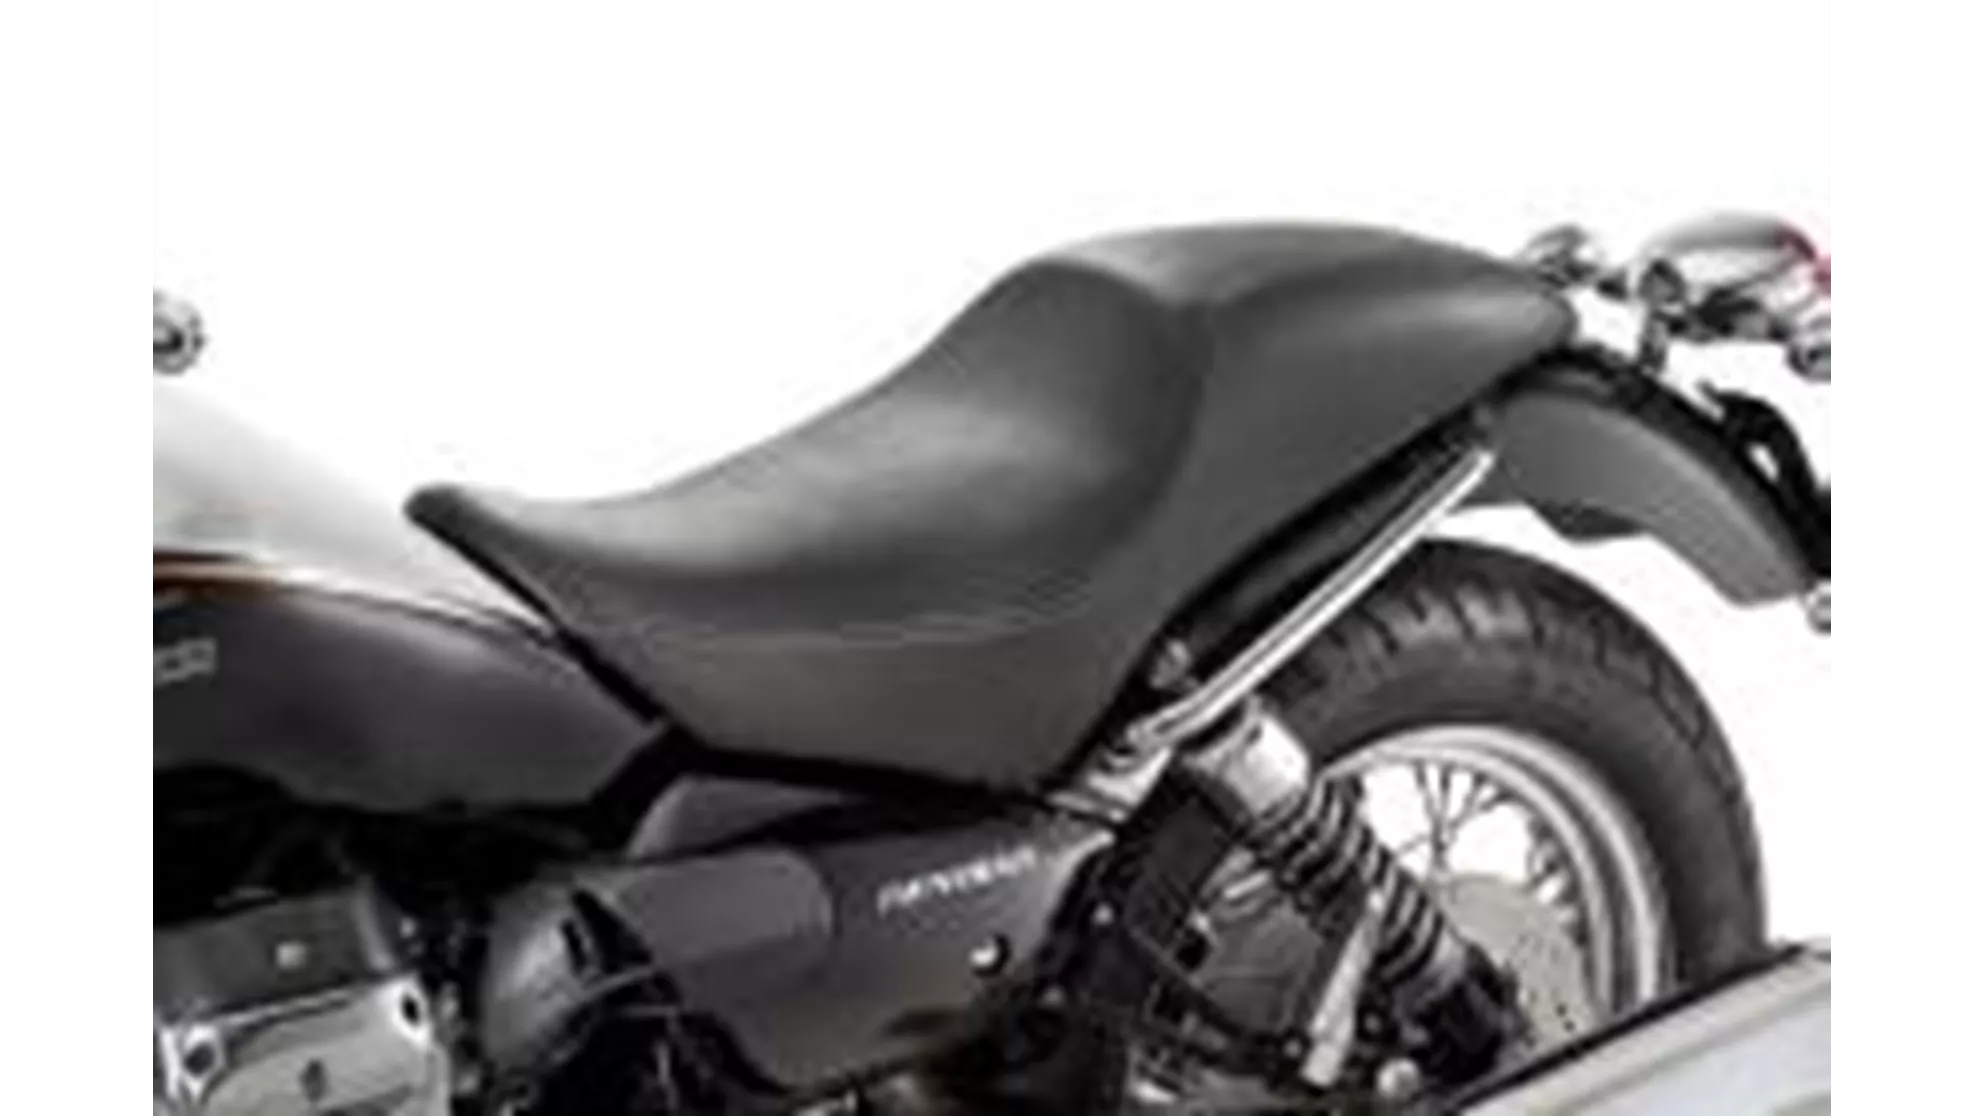 Moto Guzzi Nevada 750 Anniversario - Image 7